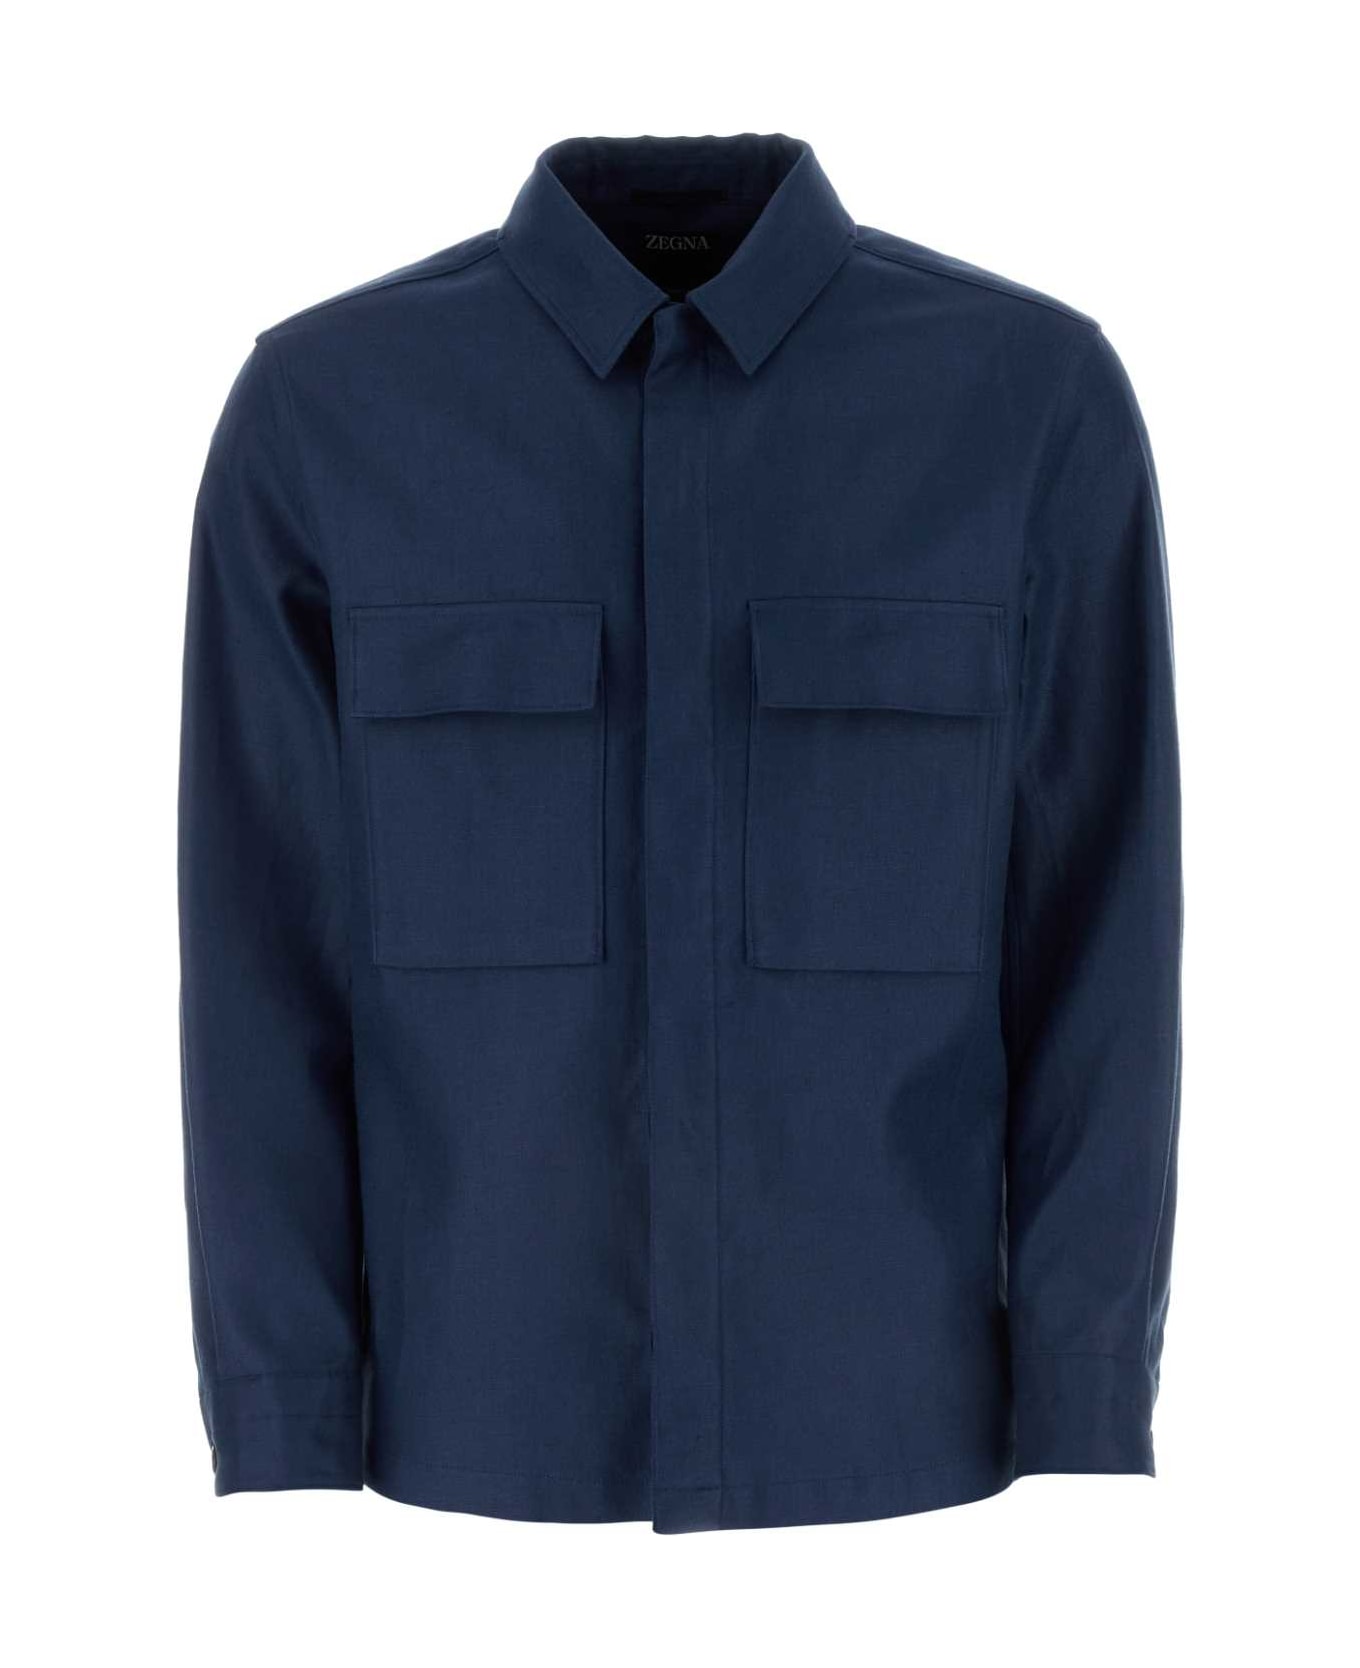 Zegna Blue Linen Shirt - B07G